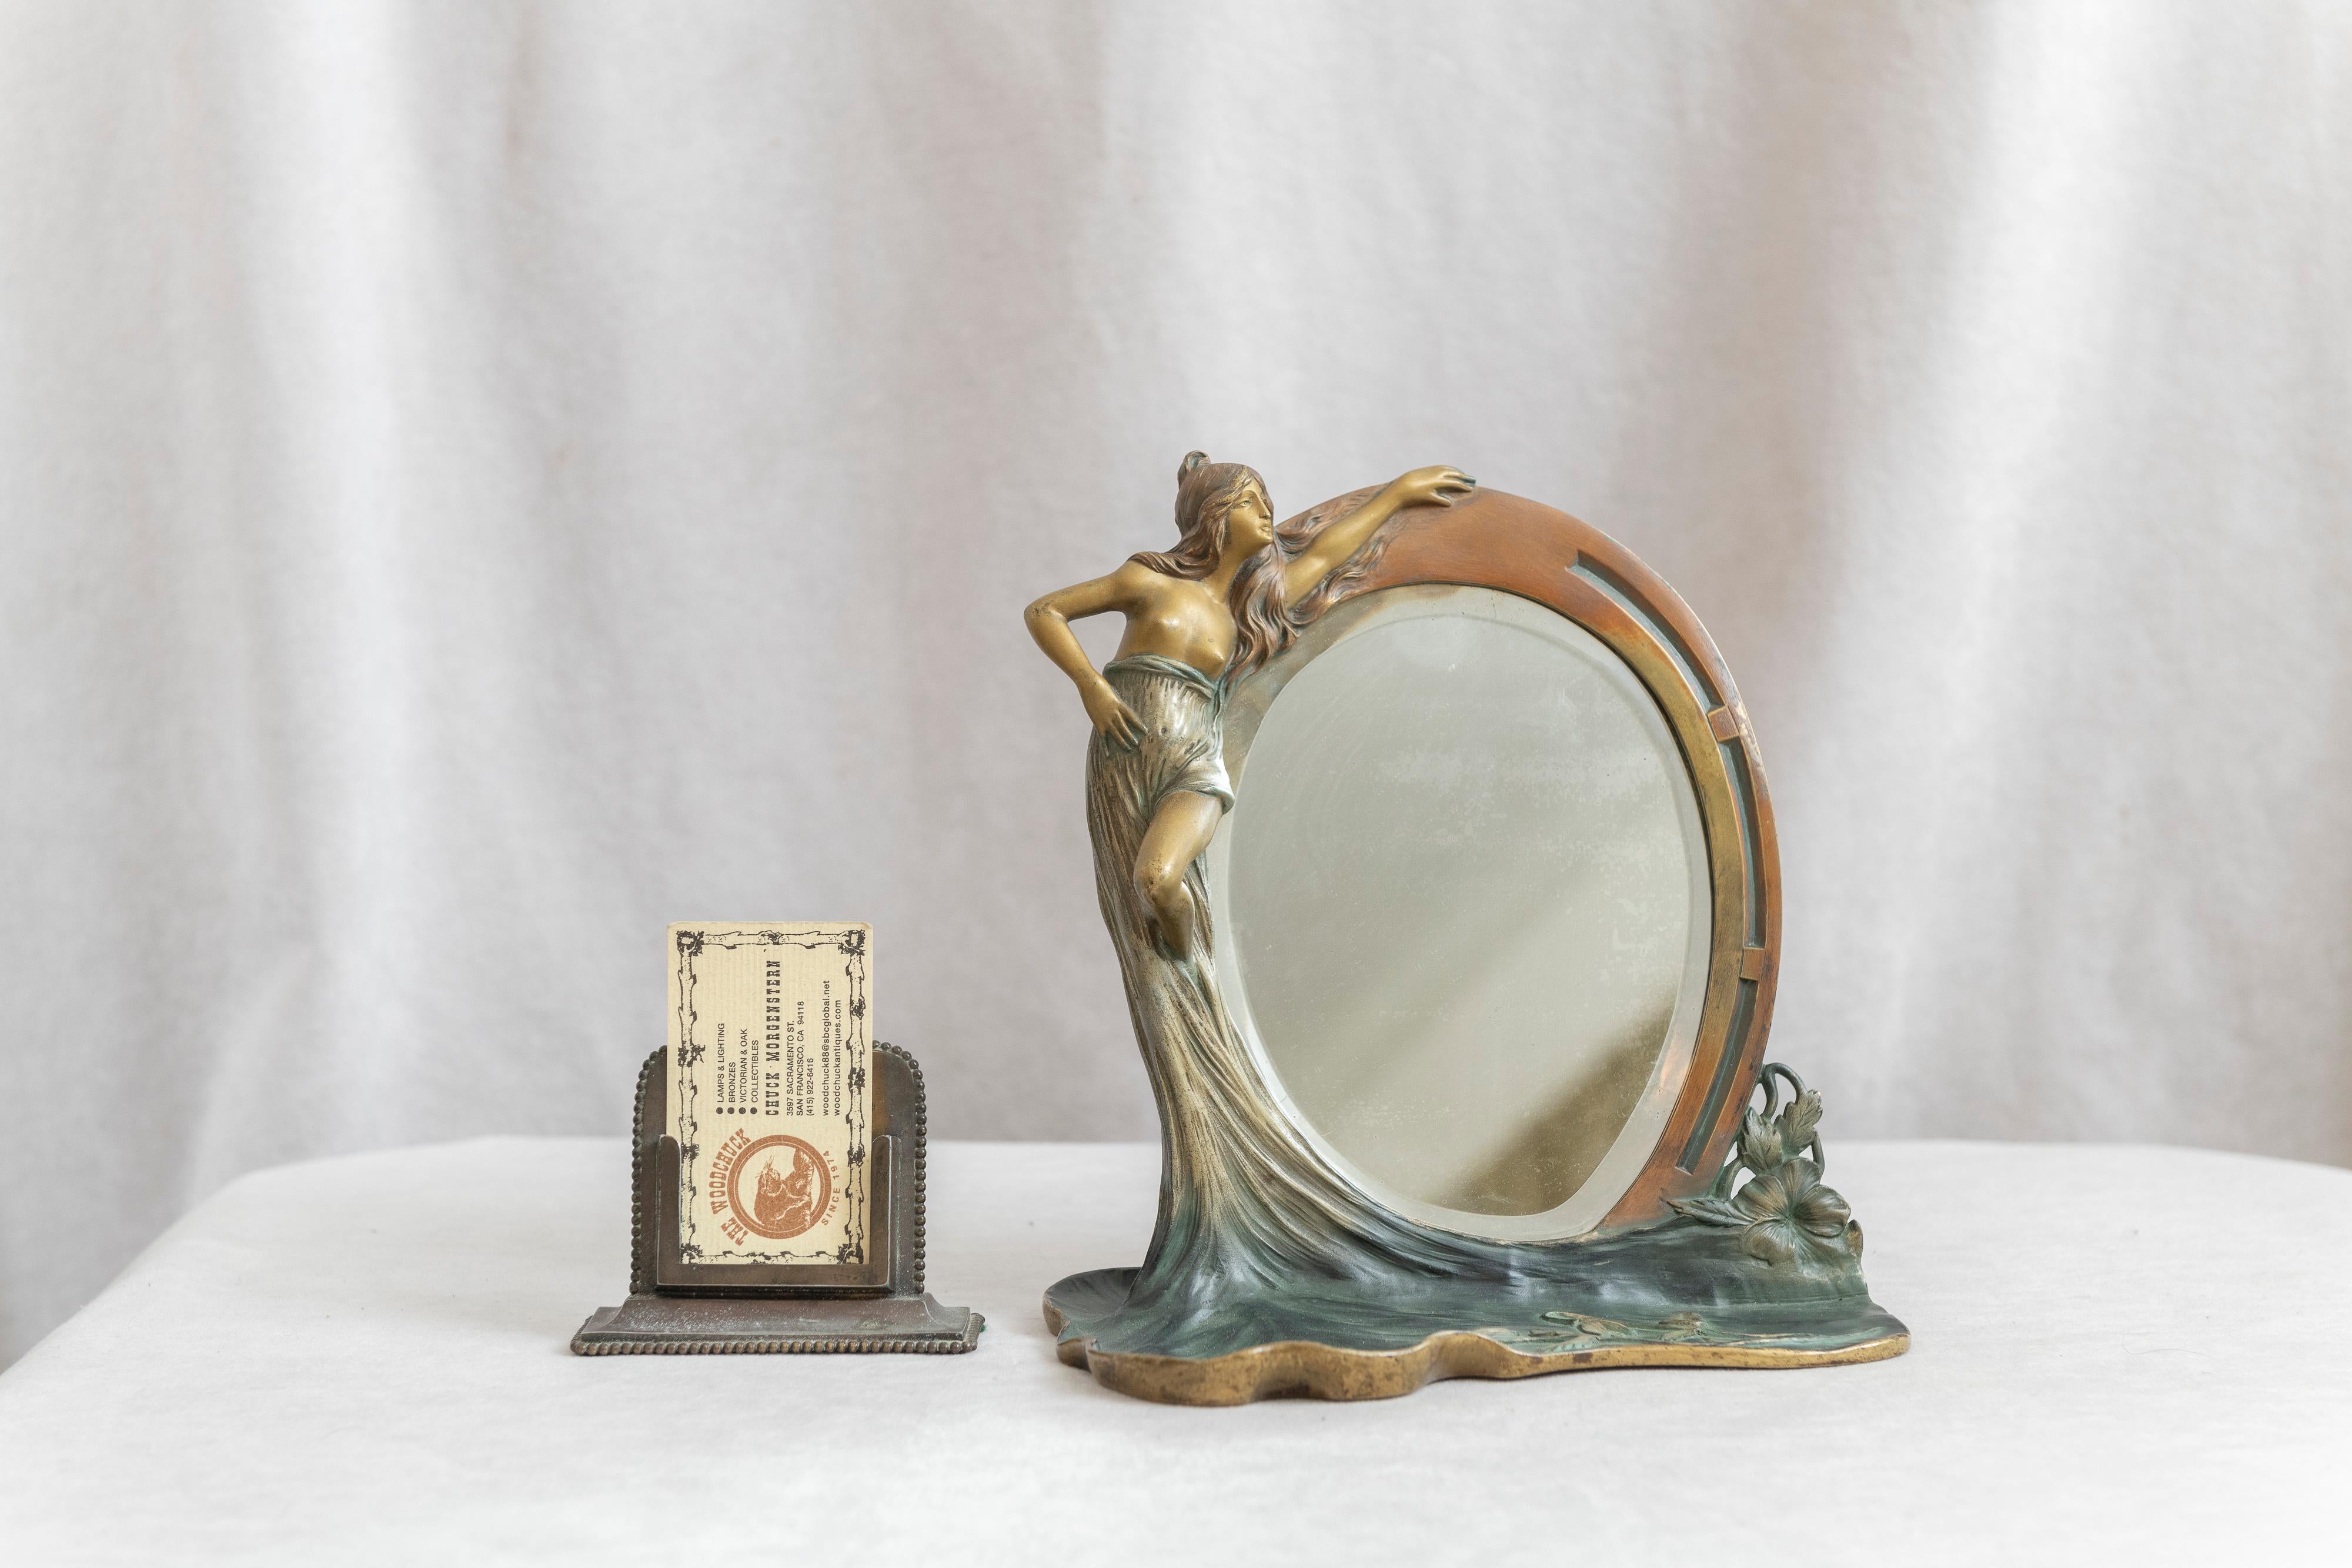 Un bel exemple de miroir figuré art nouveau en bronze. Une jeune femme tenant un miroir biseauté avec une zone plate en dessous couverte de fleurs. Nous avons particulièrement aimé cette zone plate pour l'attention portée aux détails des fleurs, et